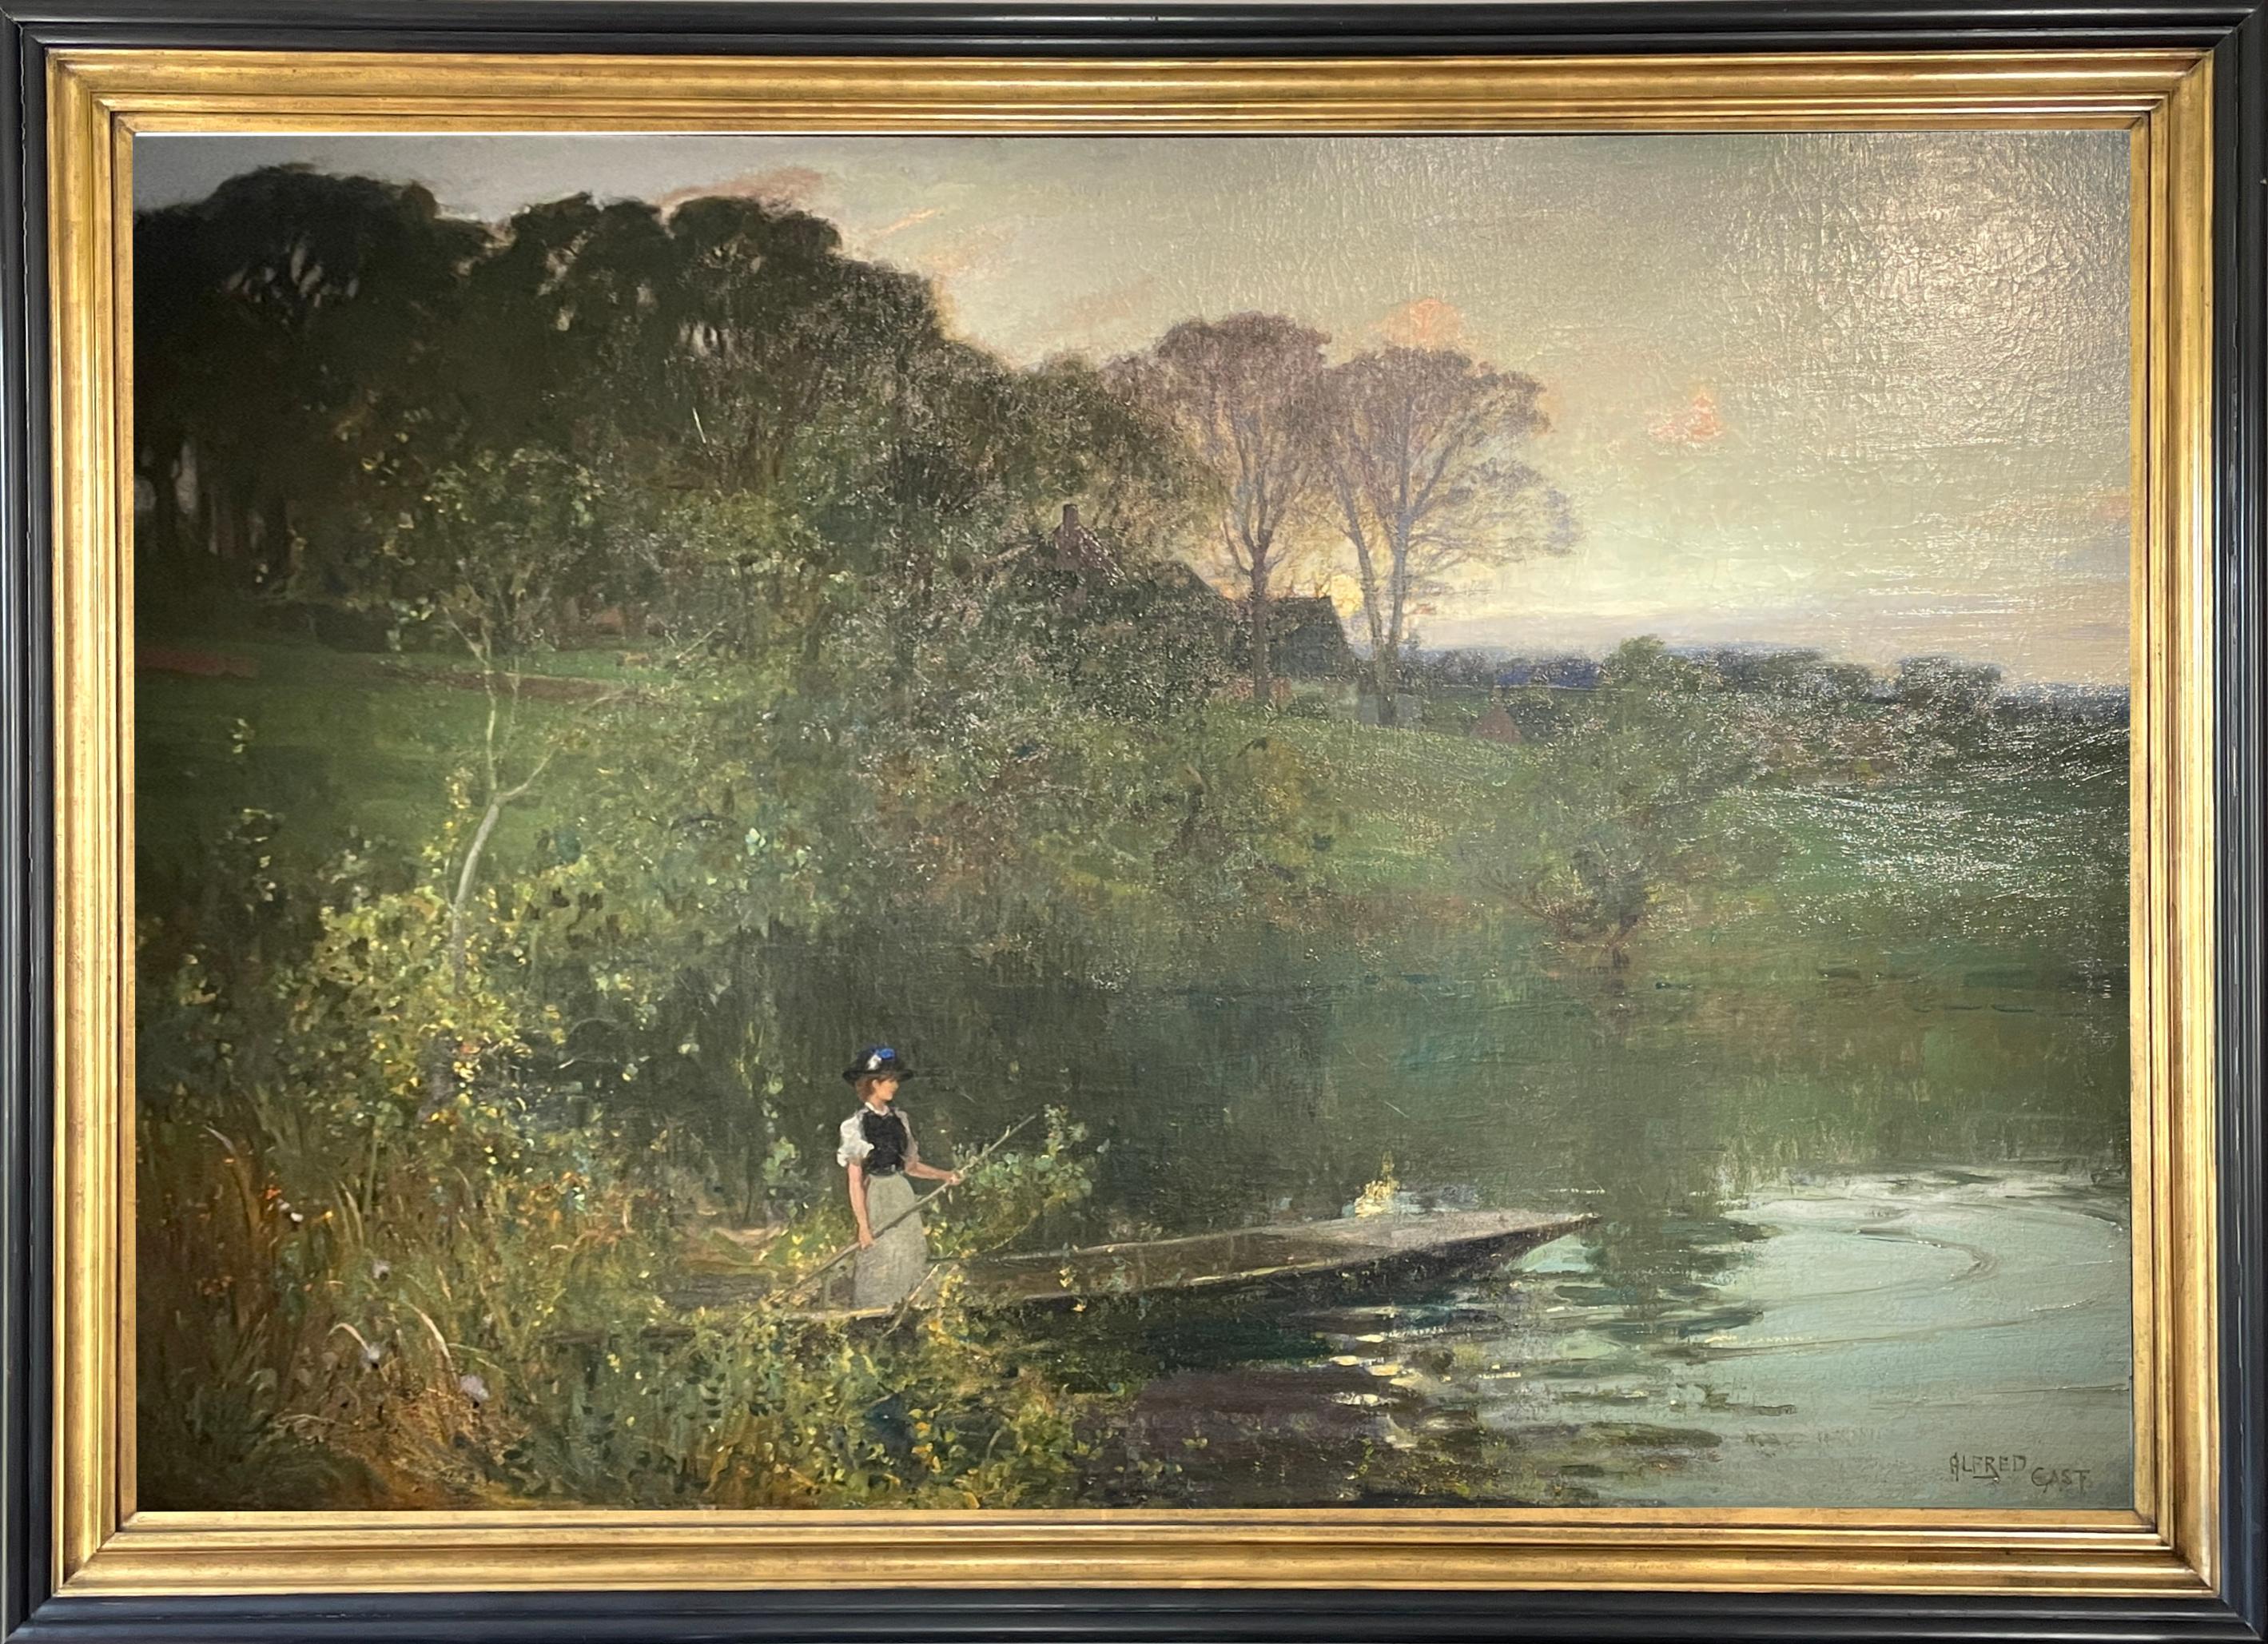 Sehr großes Öl auf Leinwand 'Twilight on the River' von Sir Alfred East RA, RBA (1844 - 1913)
Signiert vom Künstler.
59" x 82" insgesamt im Rahmen. (Hauptfoto mit Scheinwerferlicht aufgenommen)

East wurde in Kettering in Northamptonshire geboren